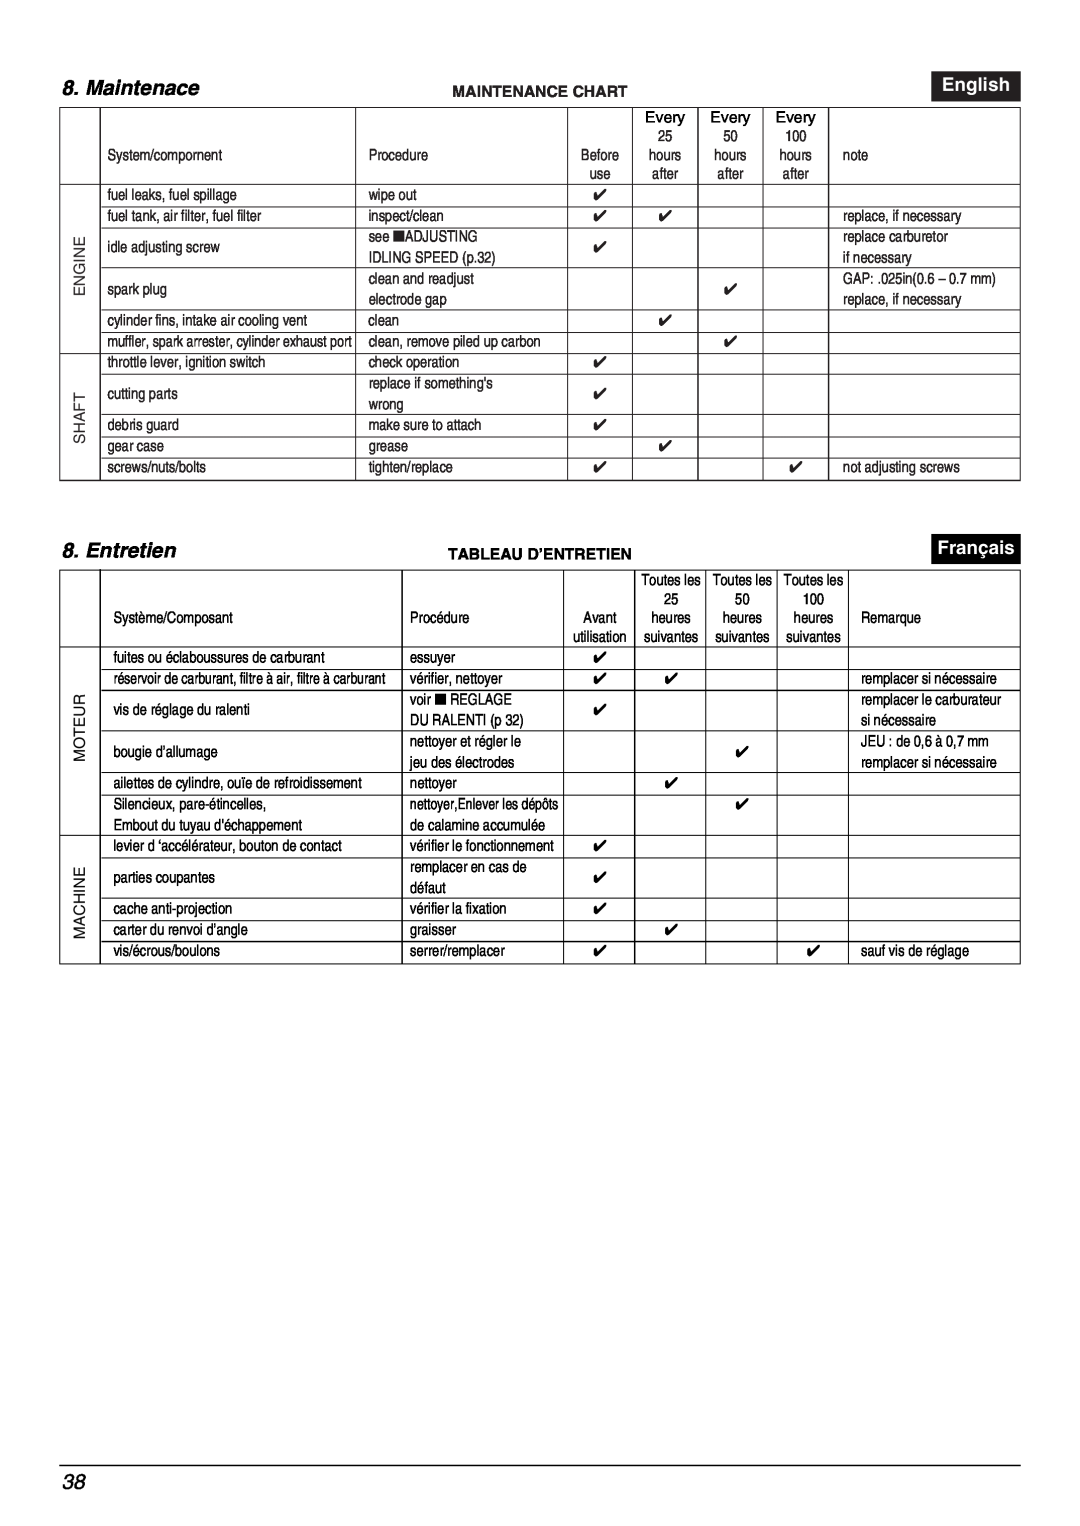 Zenoah BC2000 manual Maintenace, English, Français, Maintenance Chart, Tableau D’Entretien 